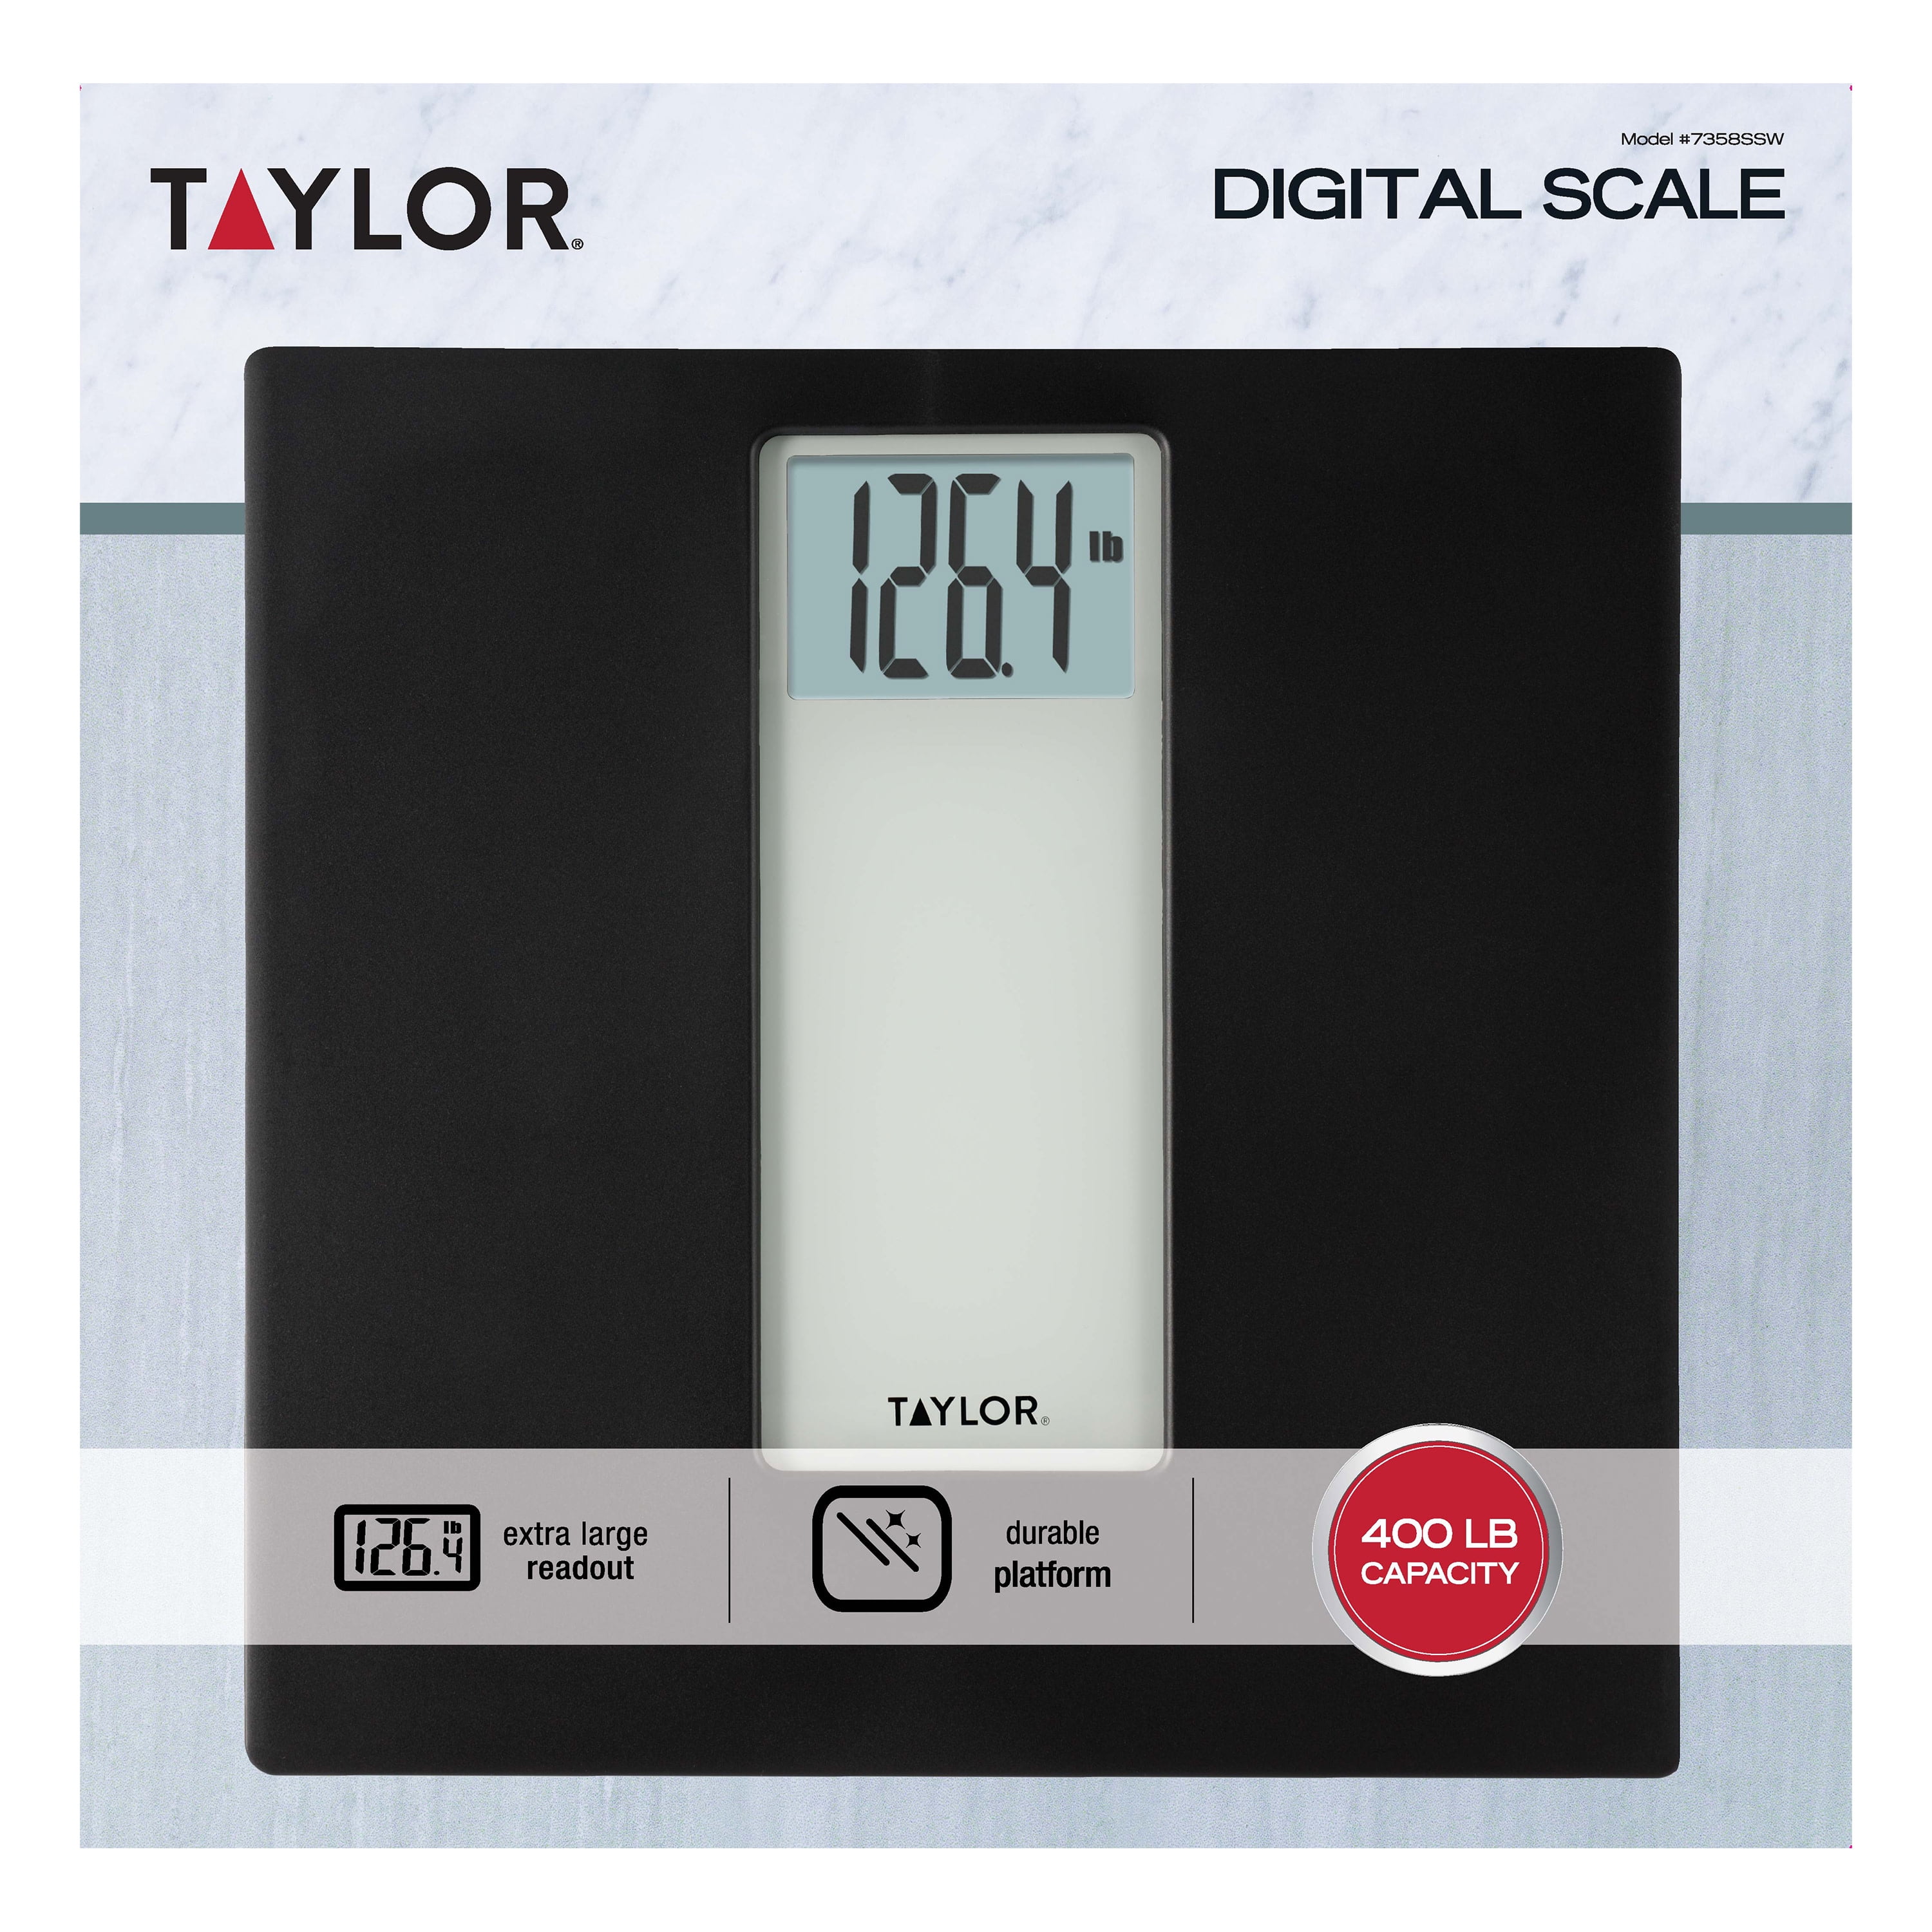 Digital White/Grey Bathroom Scale